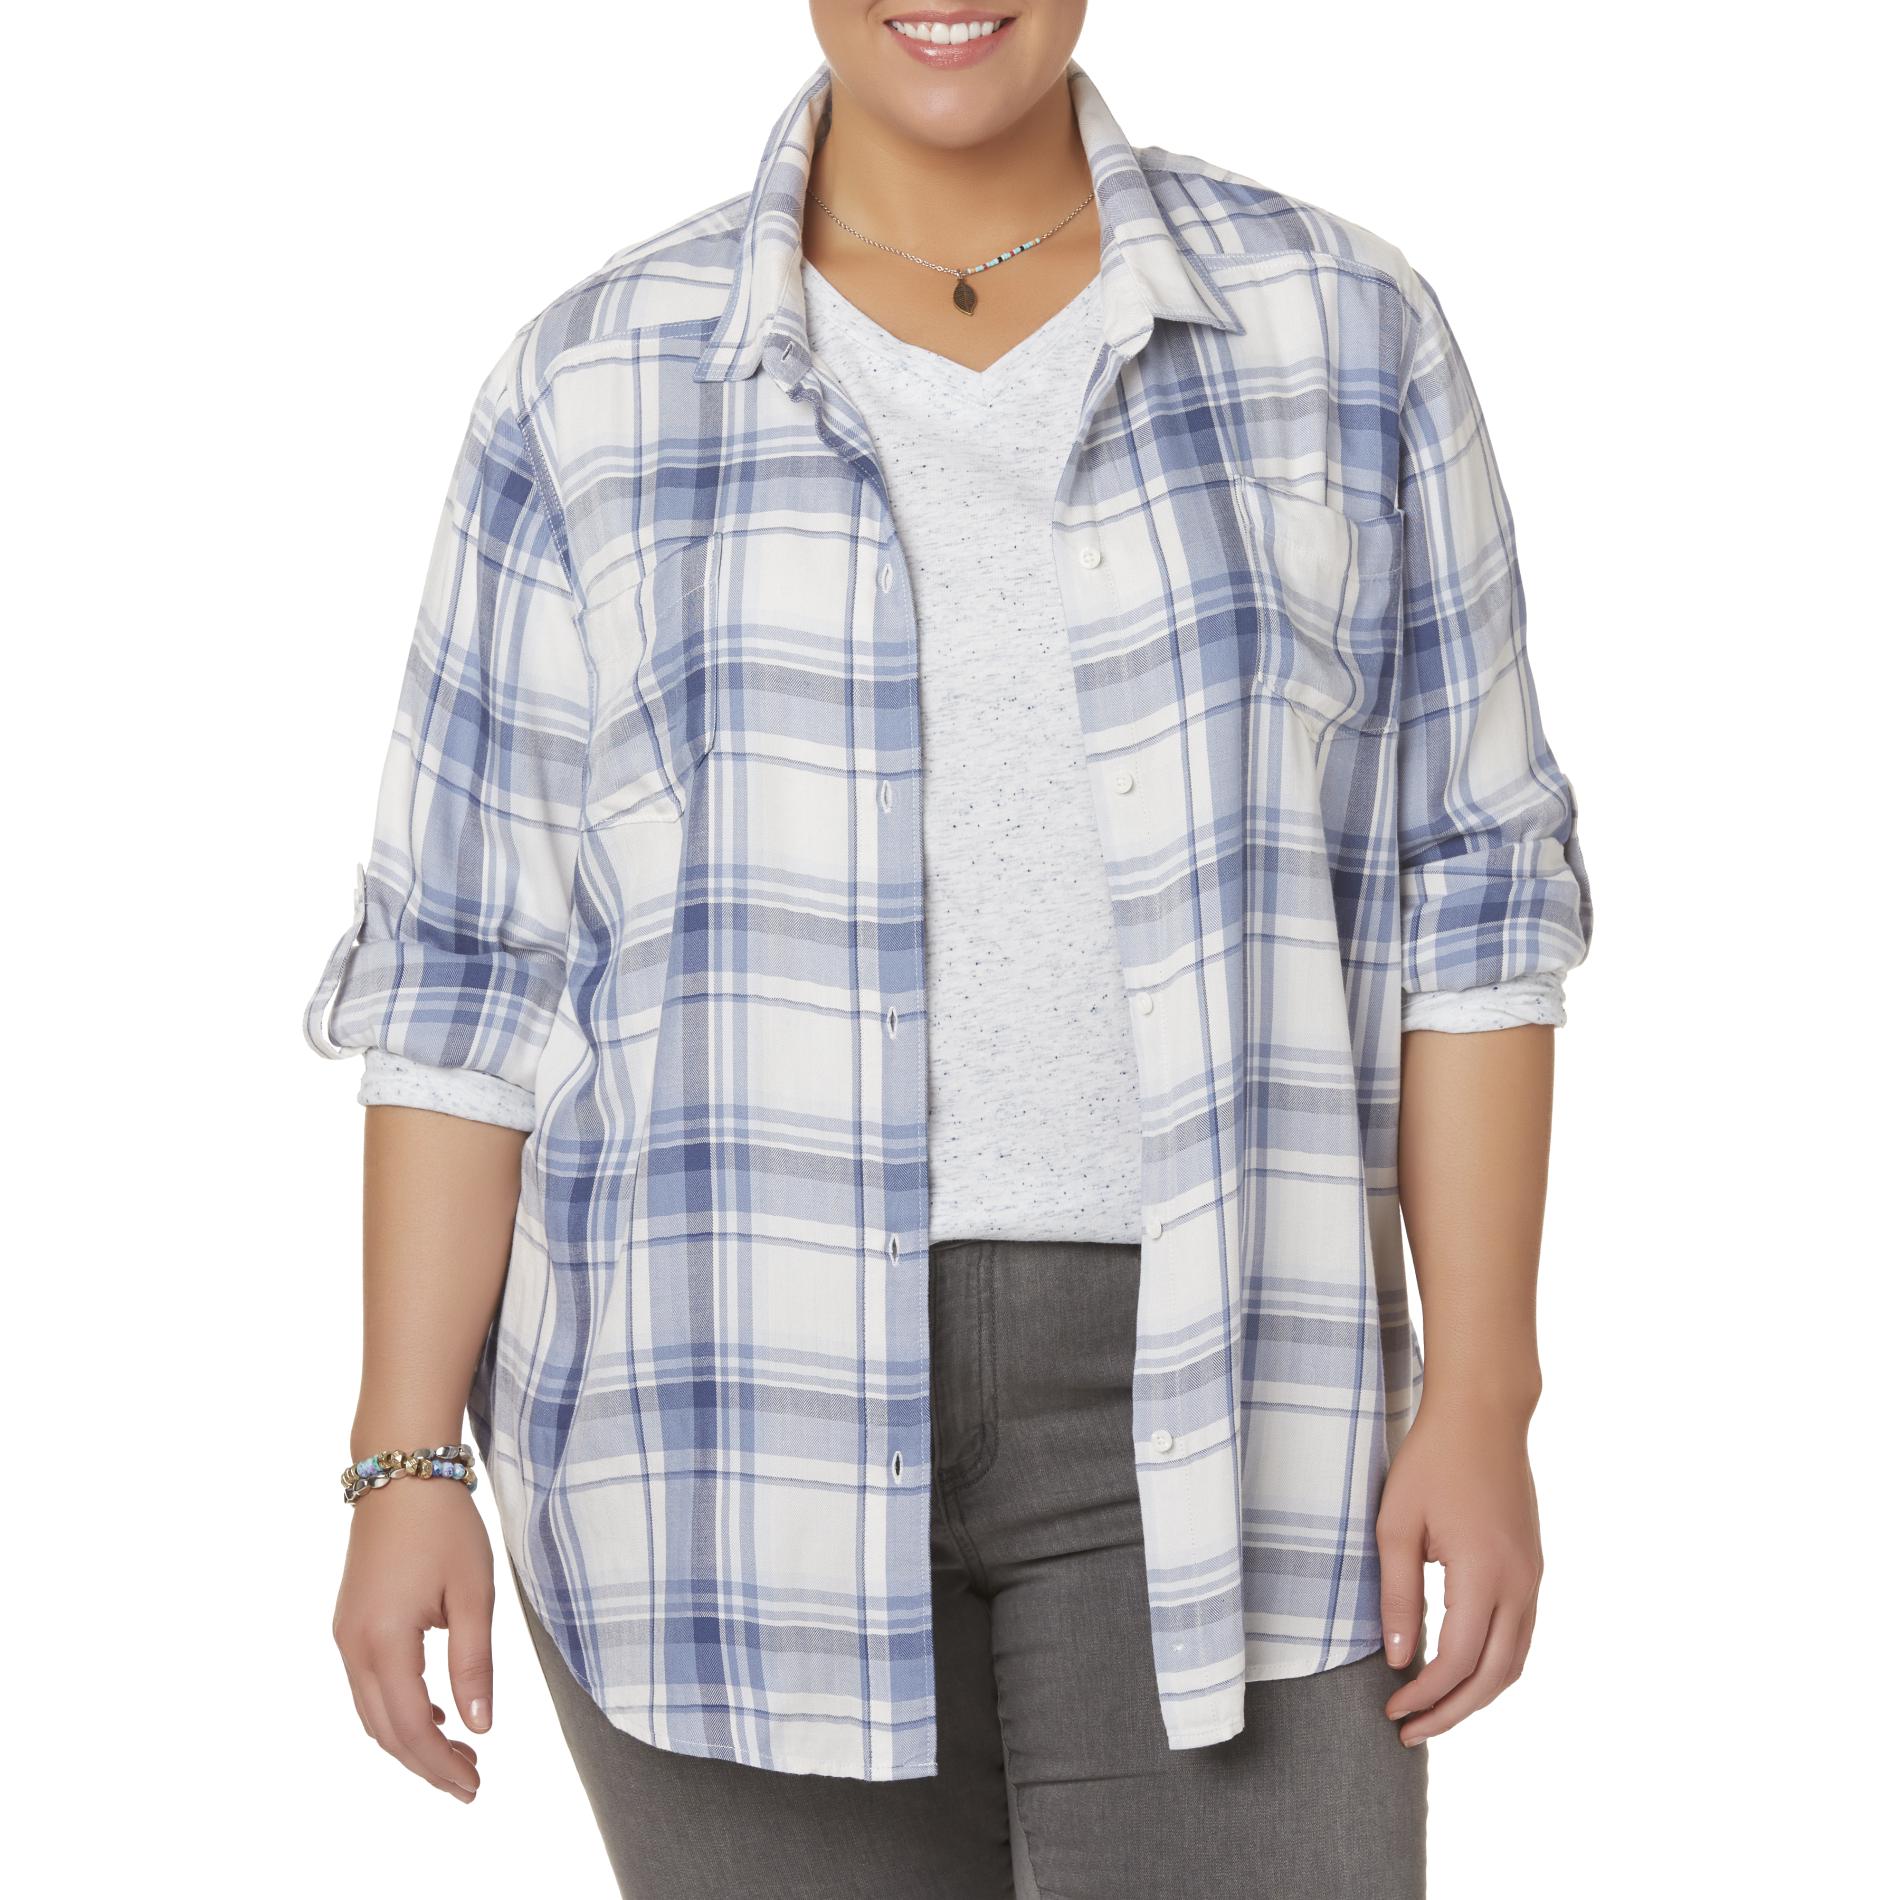 Simply Emma Women's Plus Button-Front Shirt - Plaid